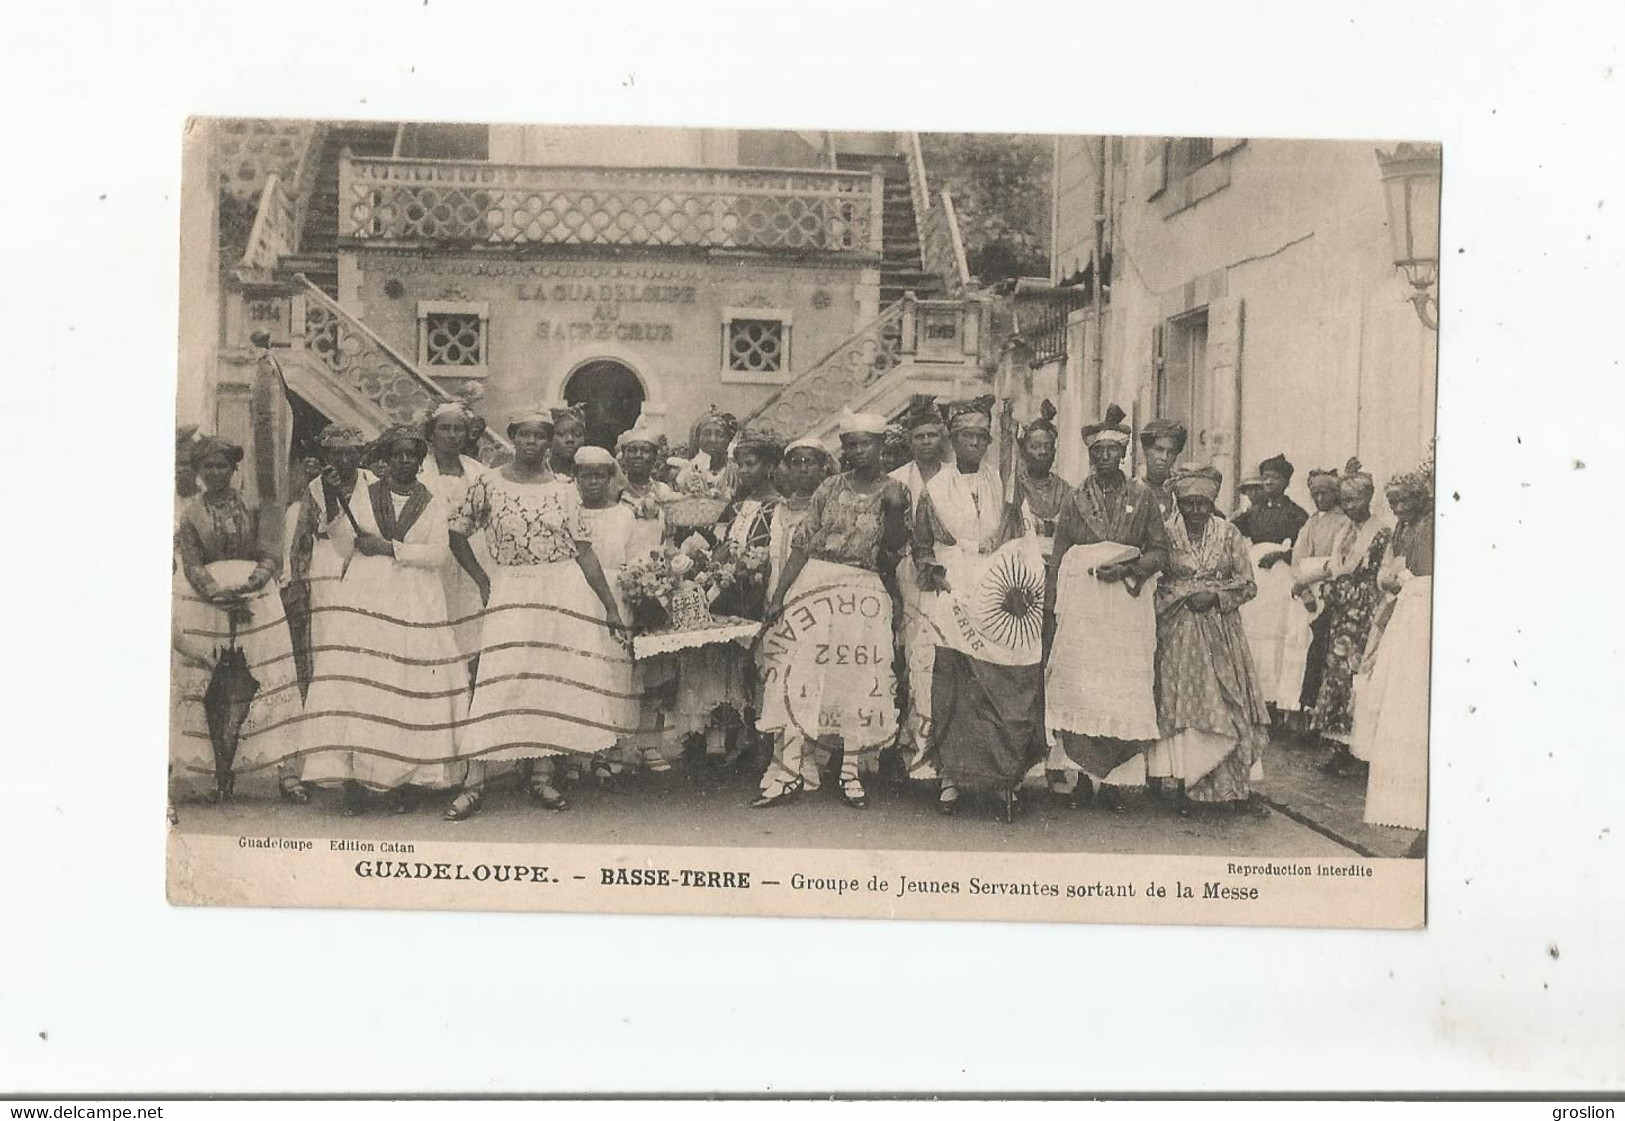 GUADELOUPE BASSE TERRE GROUPE DE JEUNES SERVANTES SORTANT DE LA MESSE 1932 (BELLE ANIMATION) - Basse Terre